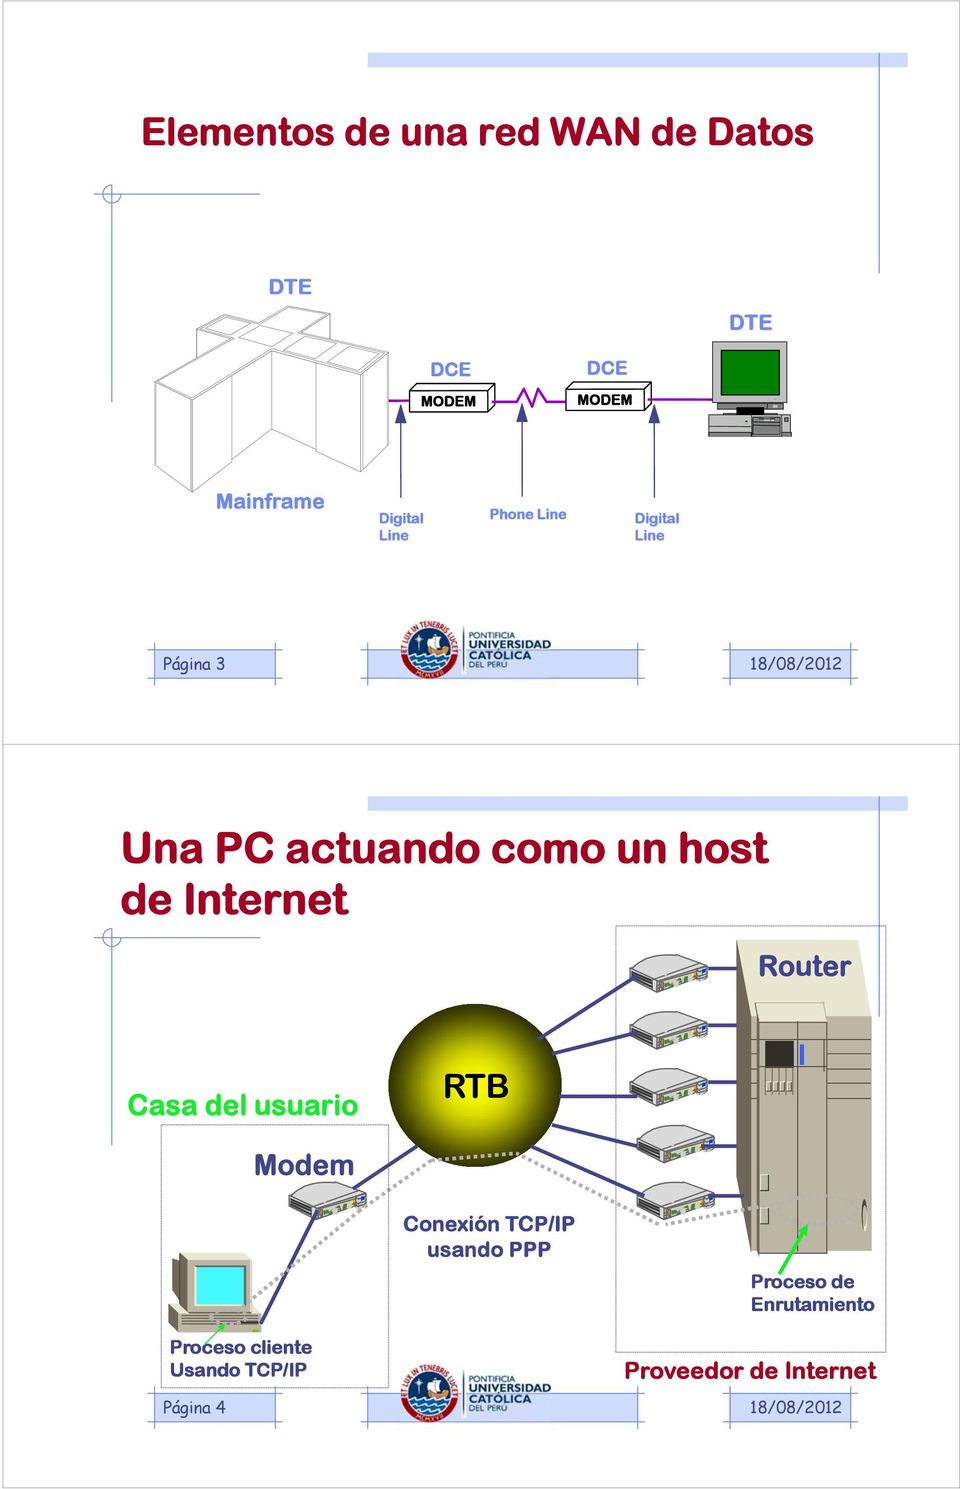 Internet Router Casa del usuario RTB Modem Conexión TCP/IP usando PPP